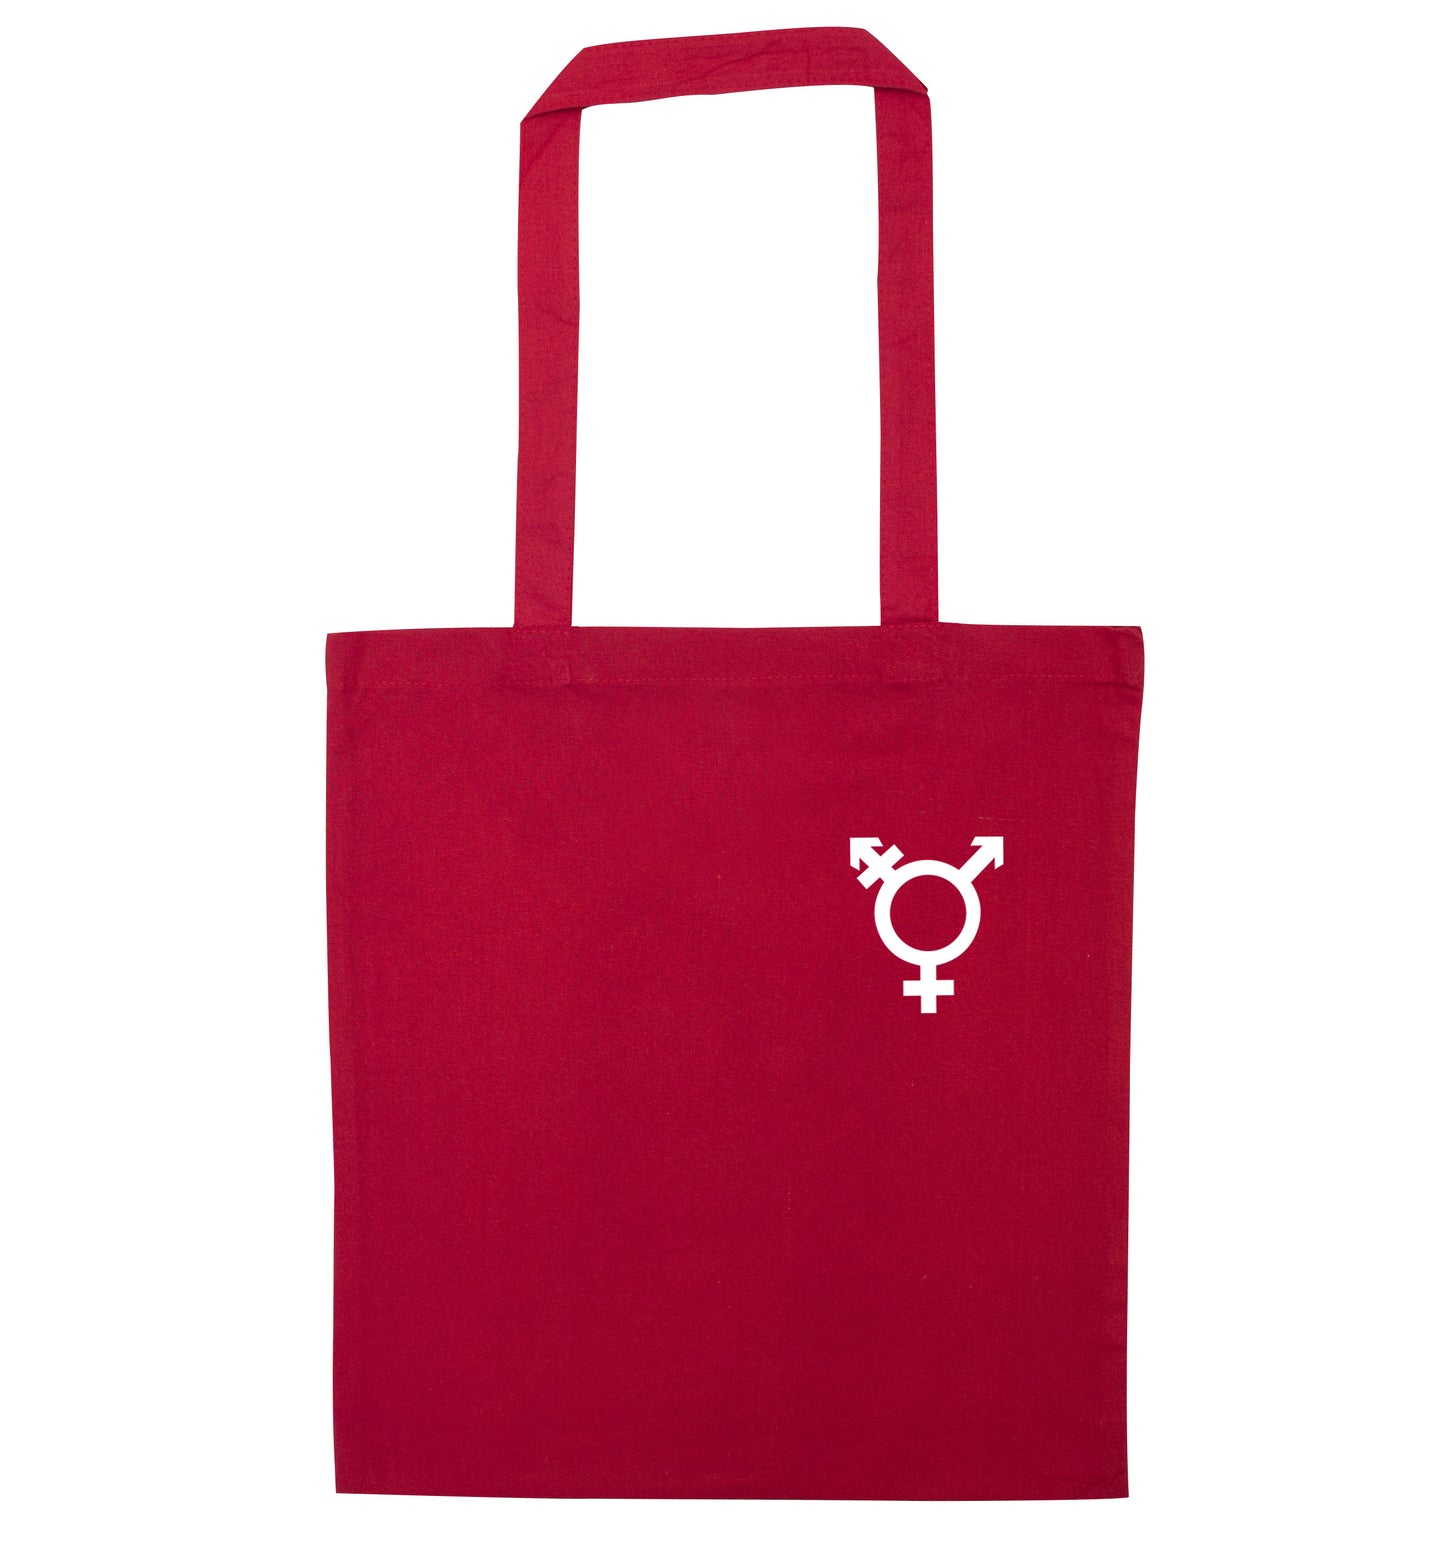 Trans gender symbol pocket red tote bag